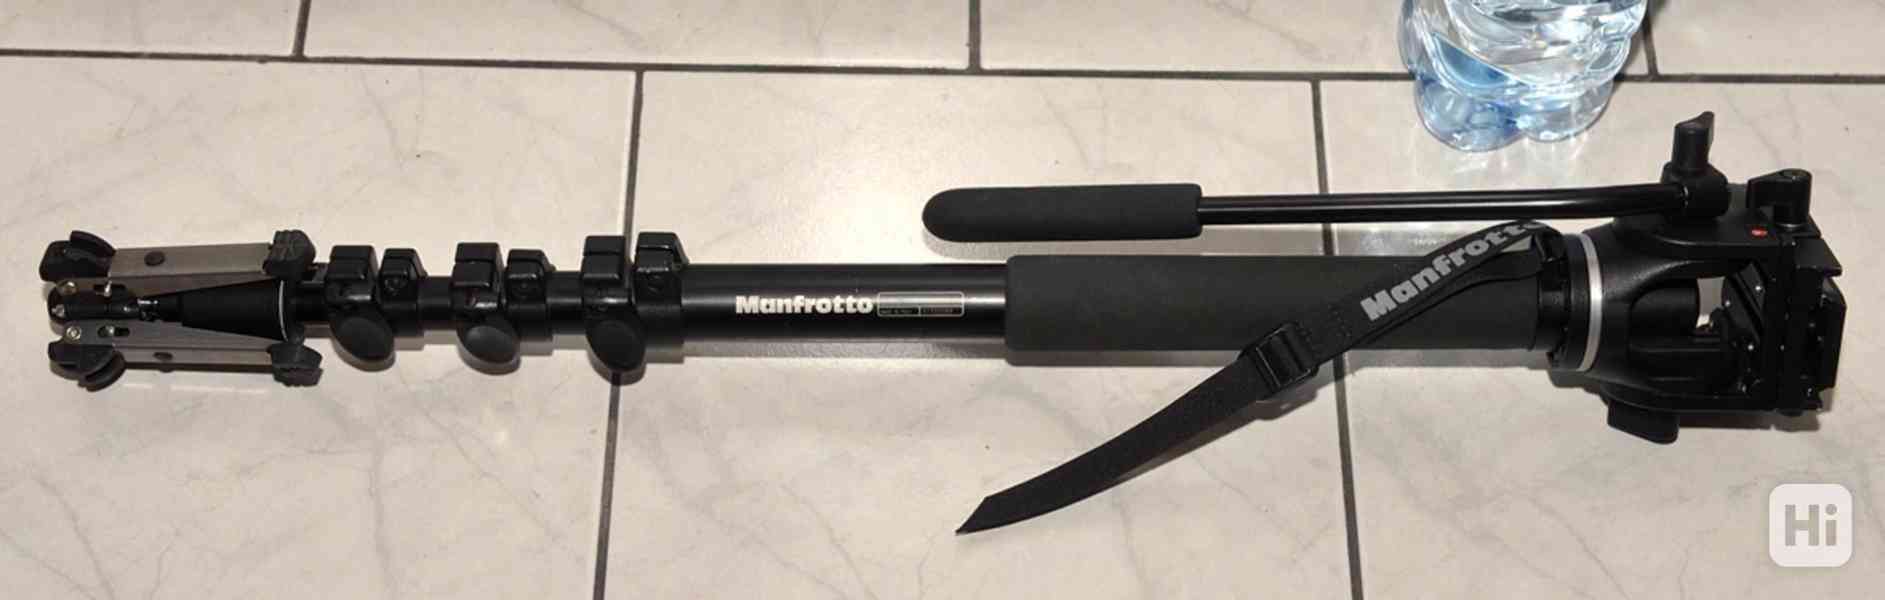 Manfrotto 561B **fluidní monopod s videohlavou*Nosnost: 4KG - foto 3